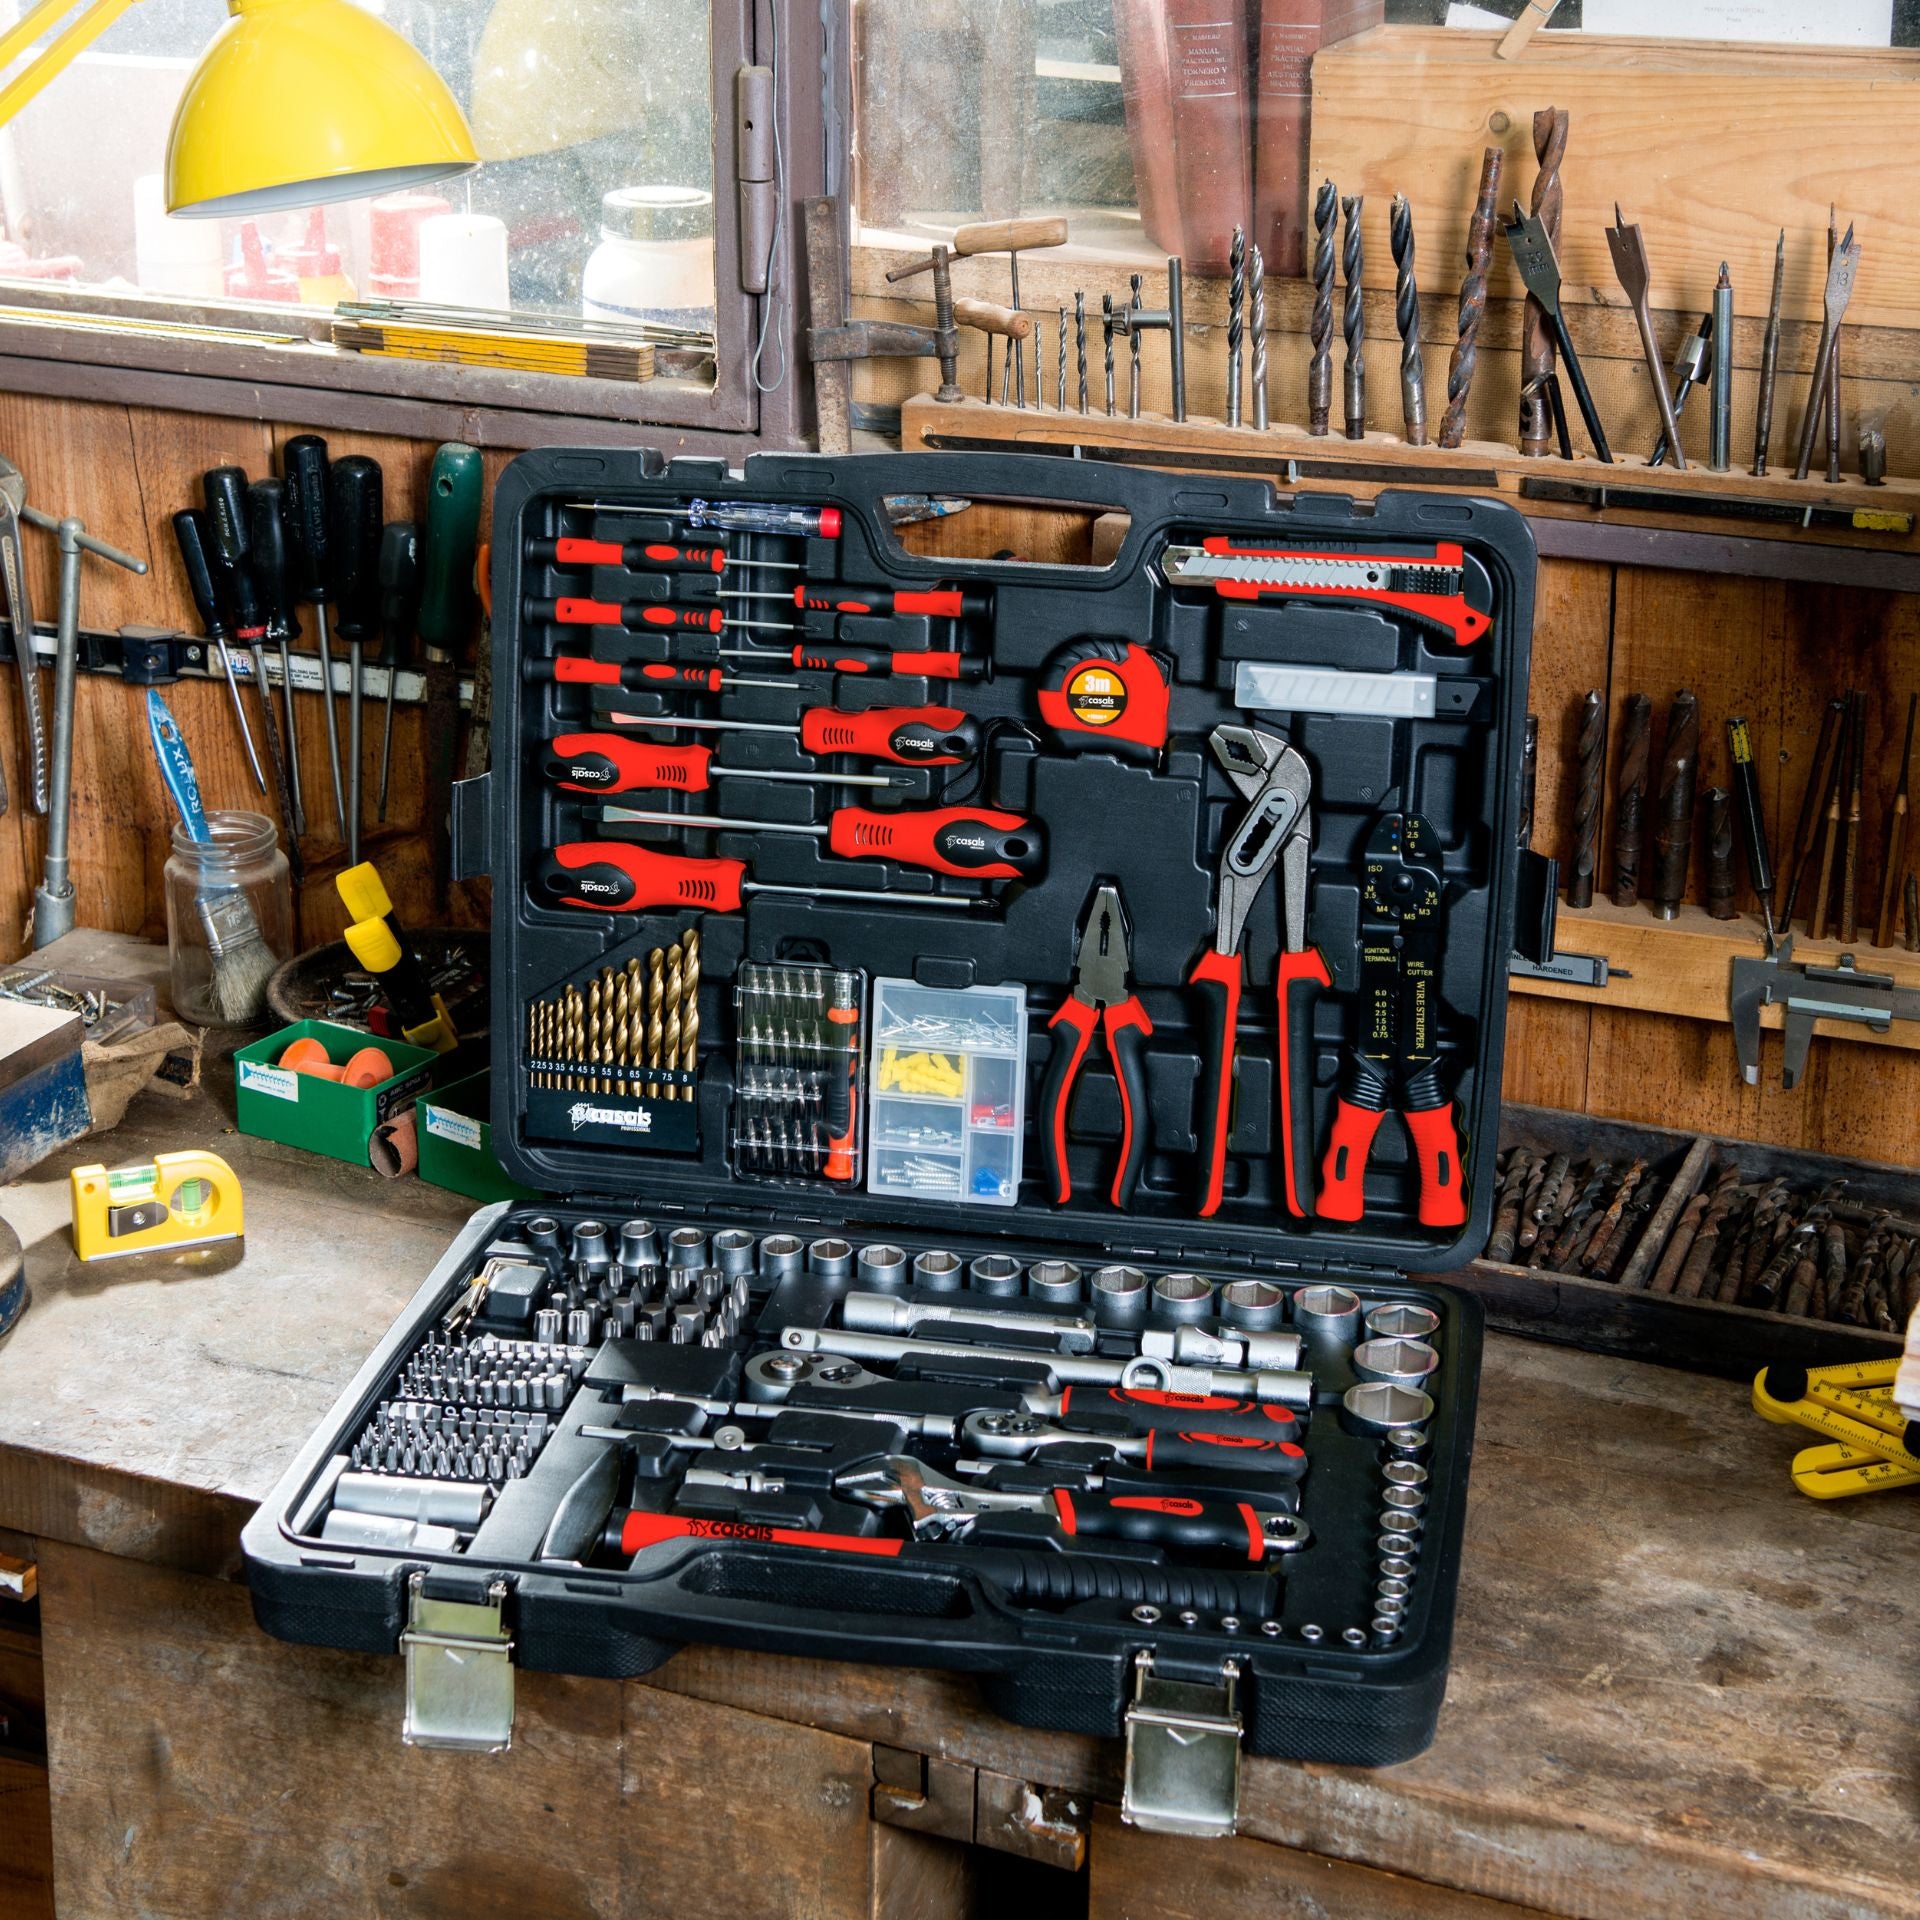 Cajas de herramientas – Casals Tools